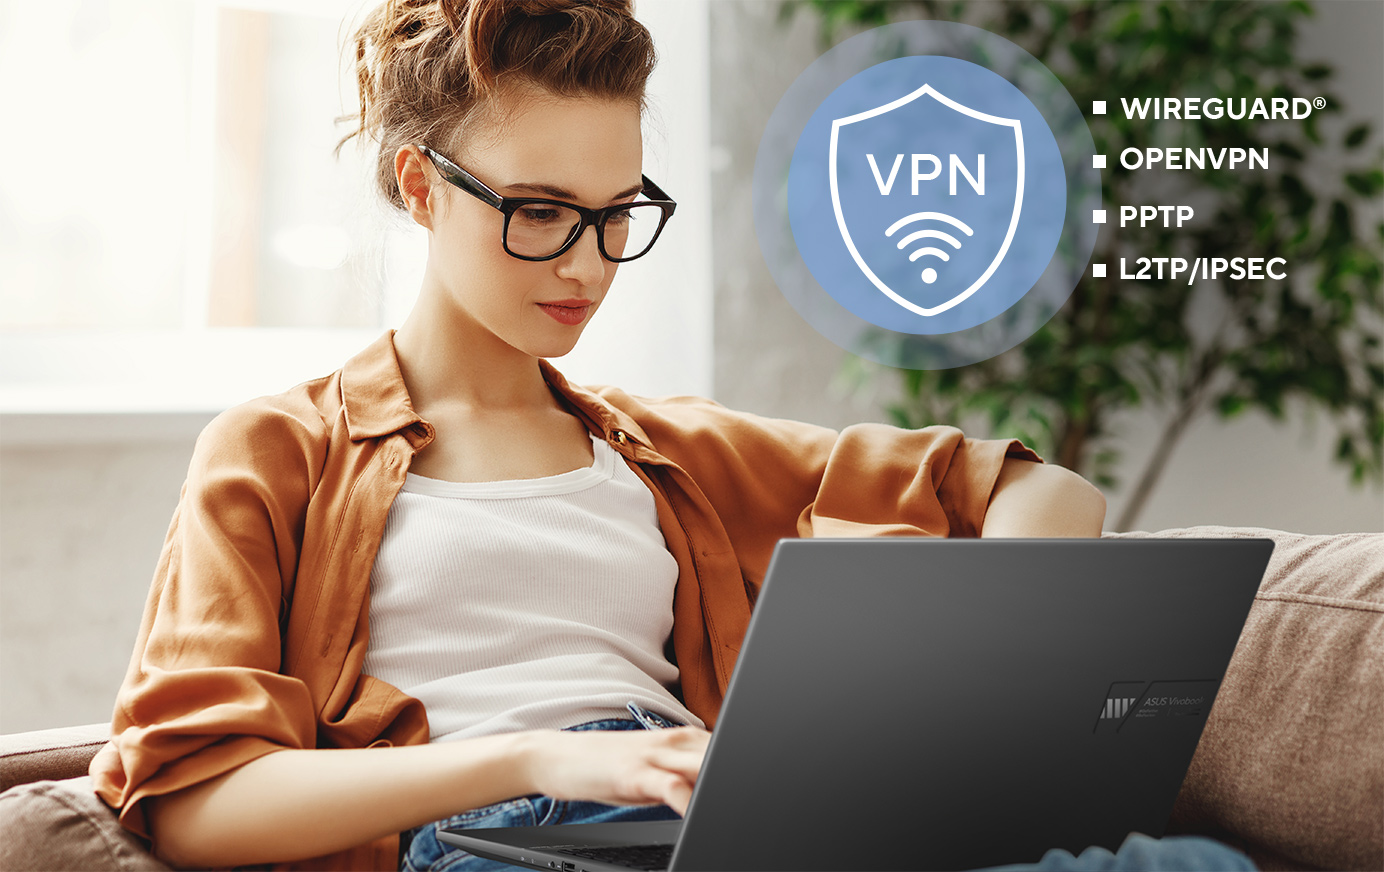 Les routeurs ASUS prennent en charge une gamme de protocoles de sécurité VPN, notamment WireGuard®, OpenVPN, PPTP et L2TP/IPSec.